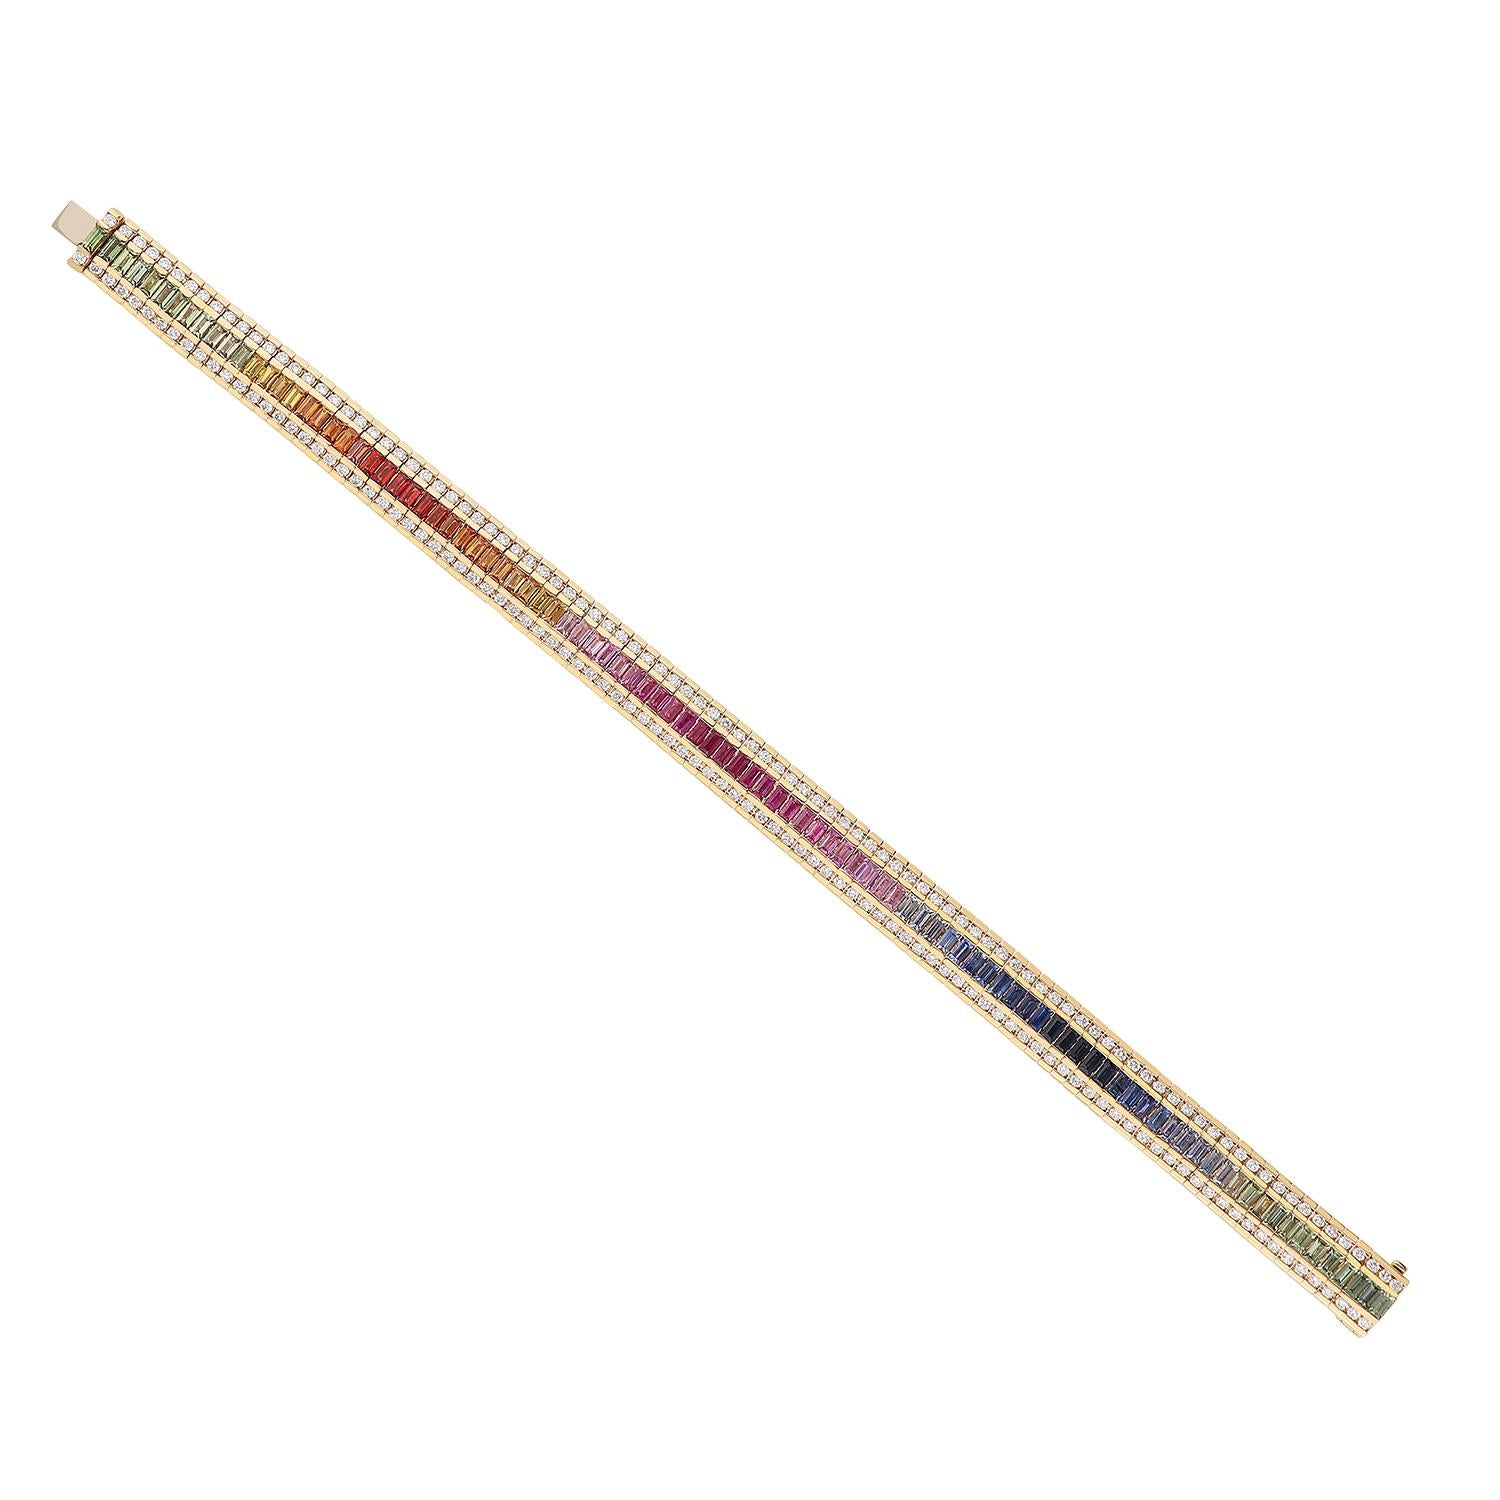 Ein wunderschönes Armband aus 18-karätigem Rotgold mit einem Gesamtgewicht von 22,40 Gramm und mehrfarbigen Saphiren im Baguetteschliff, die in einem Regenbogenfarbton von 6,75 Karat ausgewählt wurden. Das Saphirband ist auf beiden Seiten von